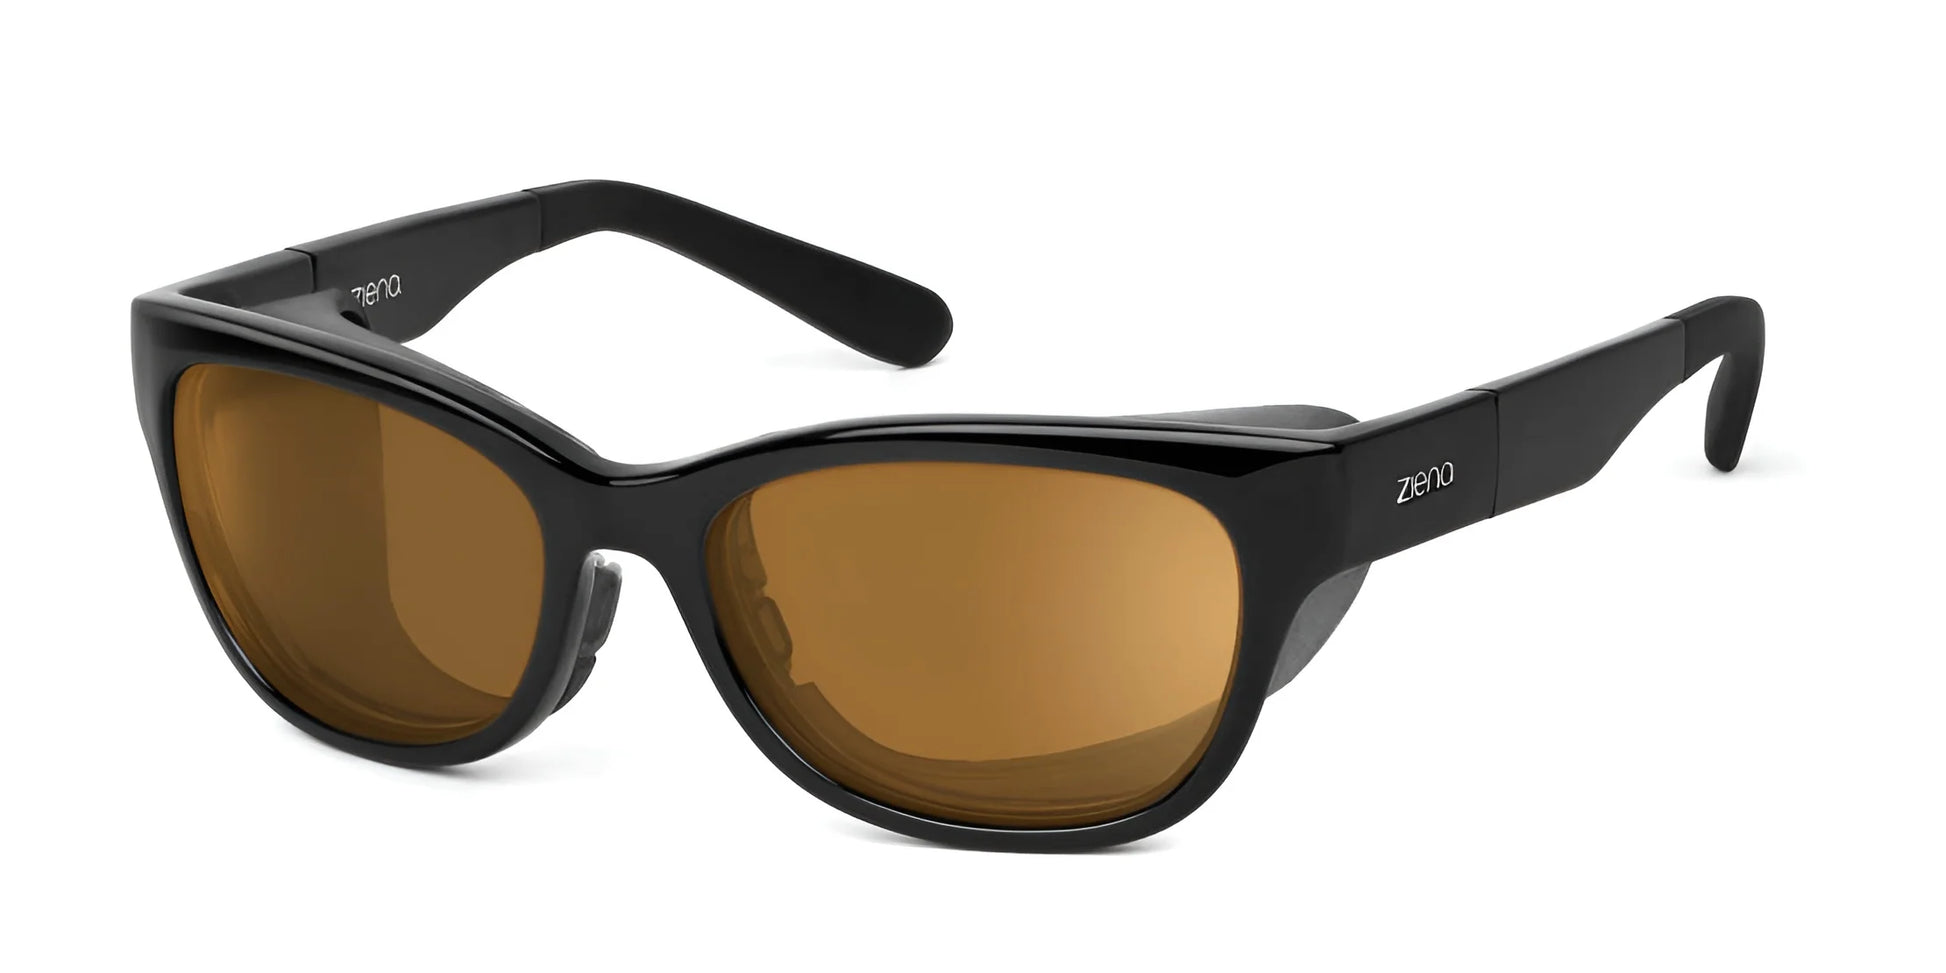 Ziena Marina Sunglasses Glossy Black / Polarized Copper / Black